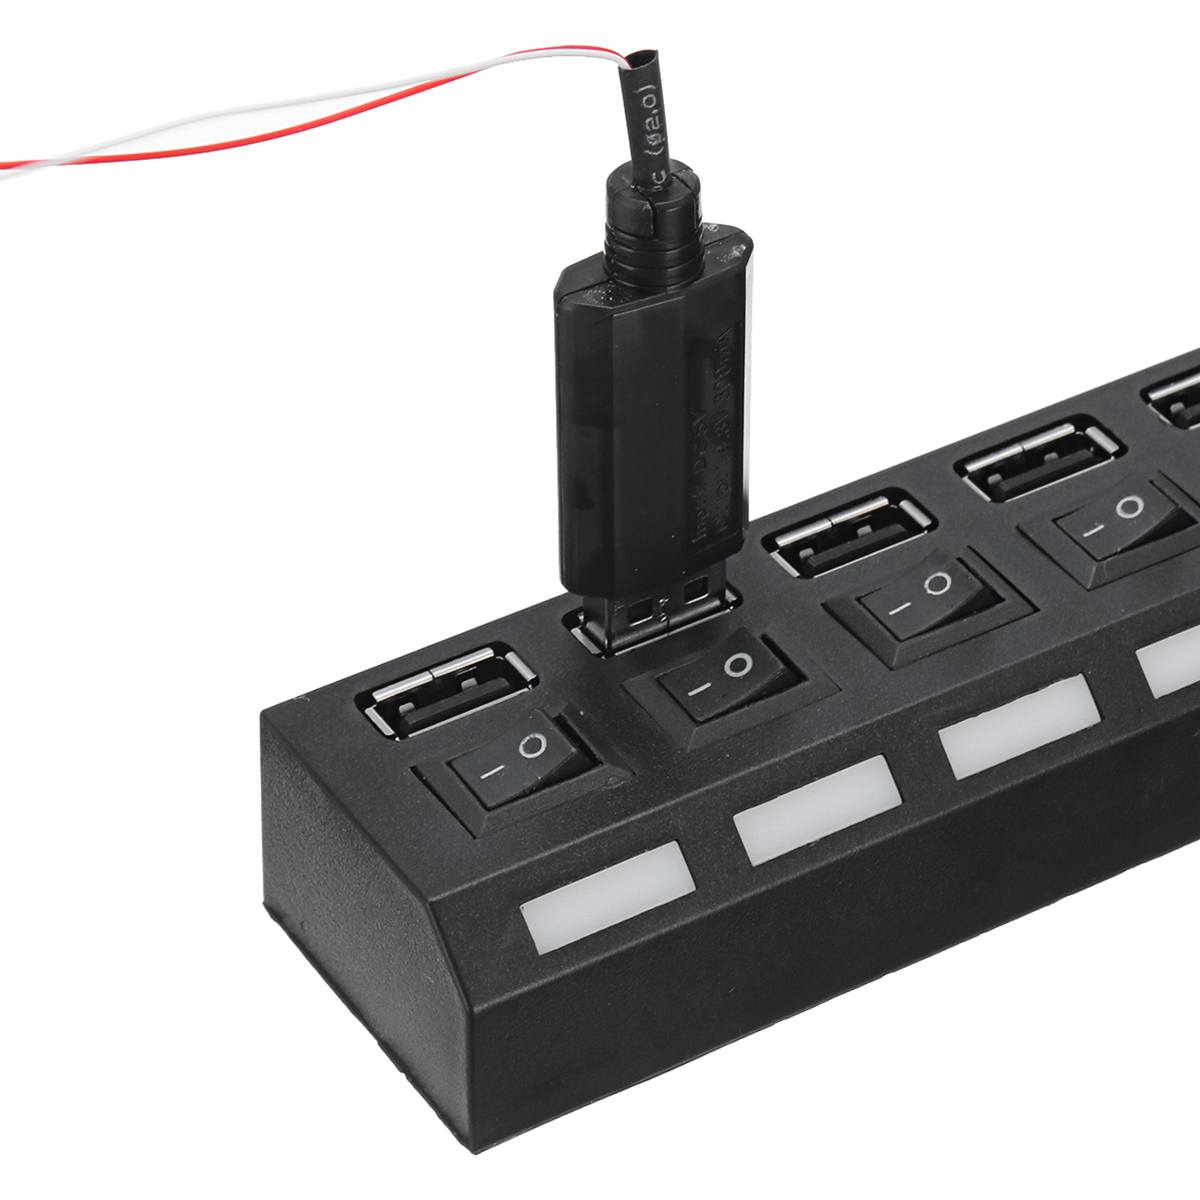 Battery Box + 7 Port USB 2.0 HUB Splitter Switch Bricks LED Lighting Kit Installing ( Battery Not Included )